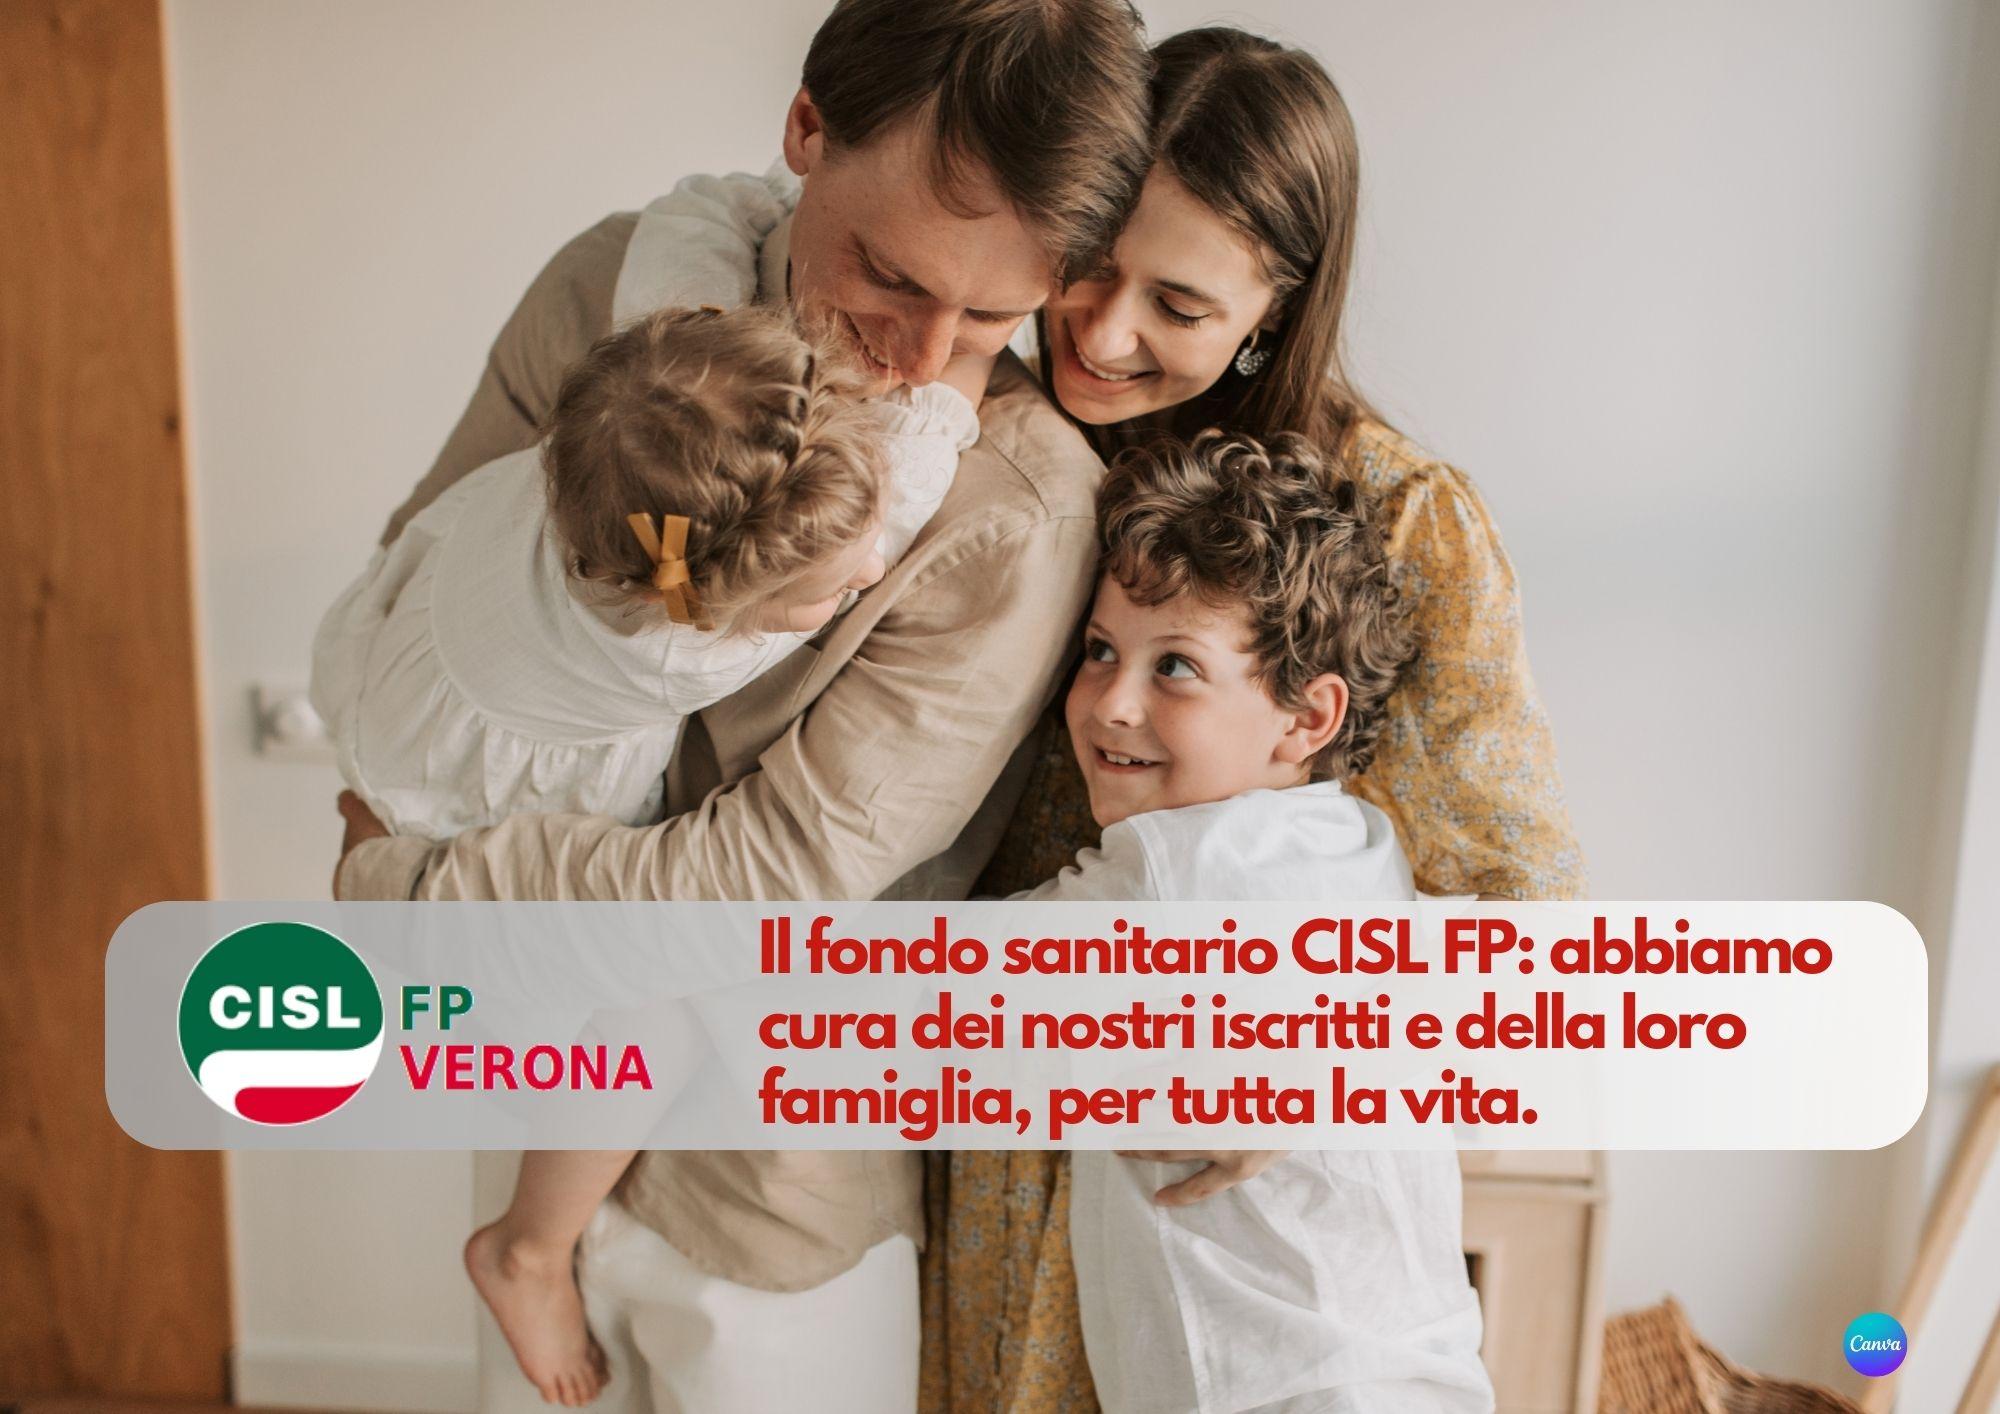 CISL FP Verona. Nasce il Fondo Sanitario CISL FP. Anche con patologie pregresse, per tutta la vita